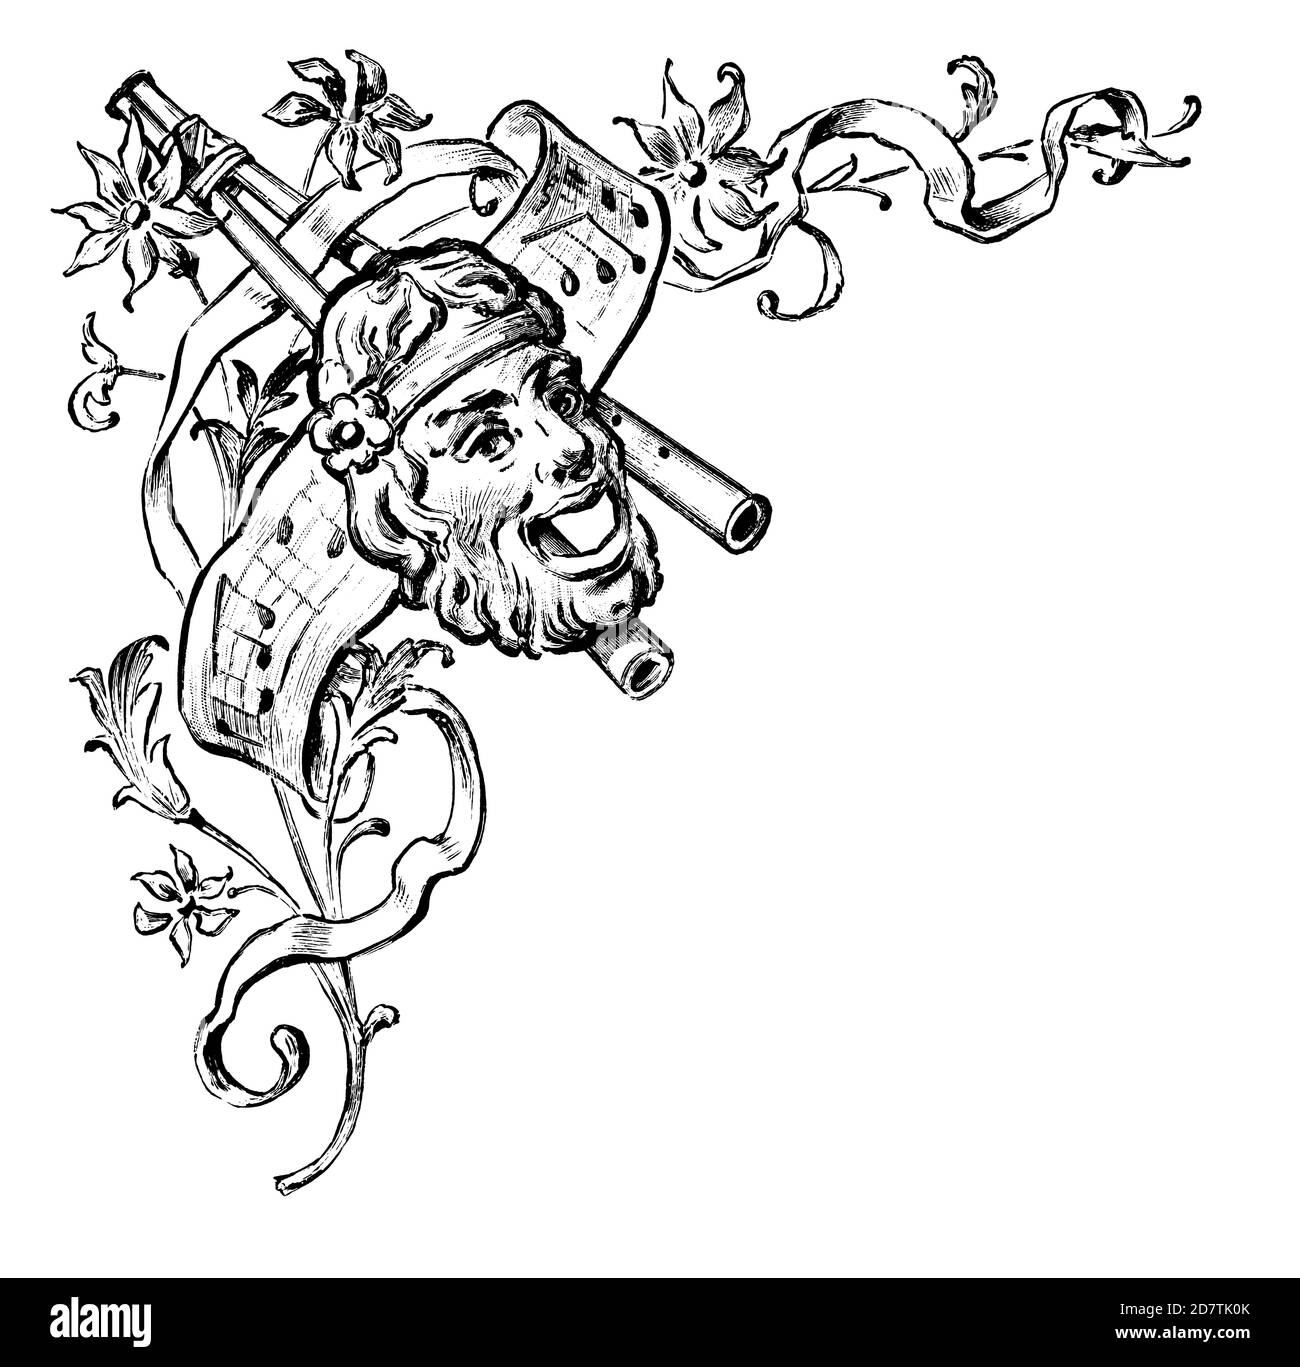 Gravure d'une décoration typographique musicale (isolée sur blanc). Publié dans spécimens des divers caractères et vignettes typographiques de la fond Banque D'Images